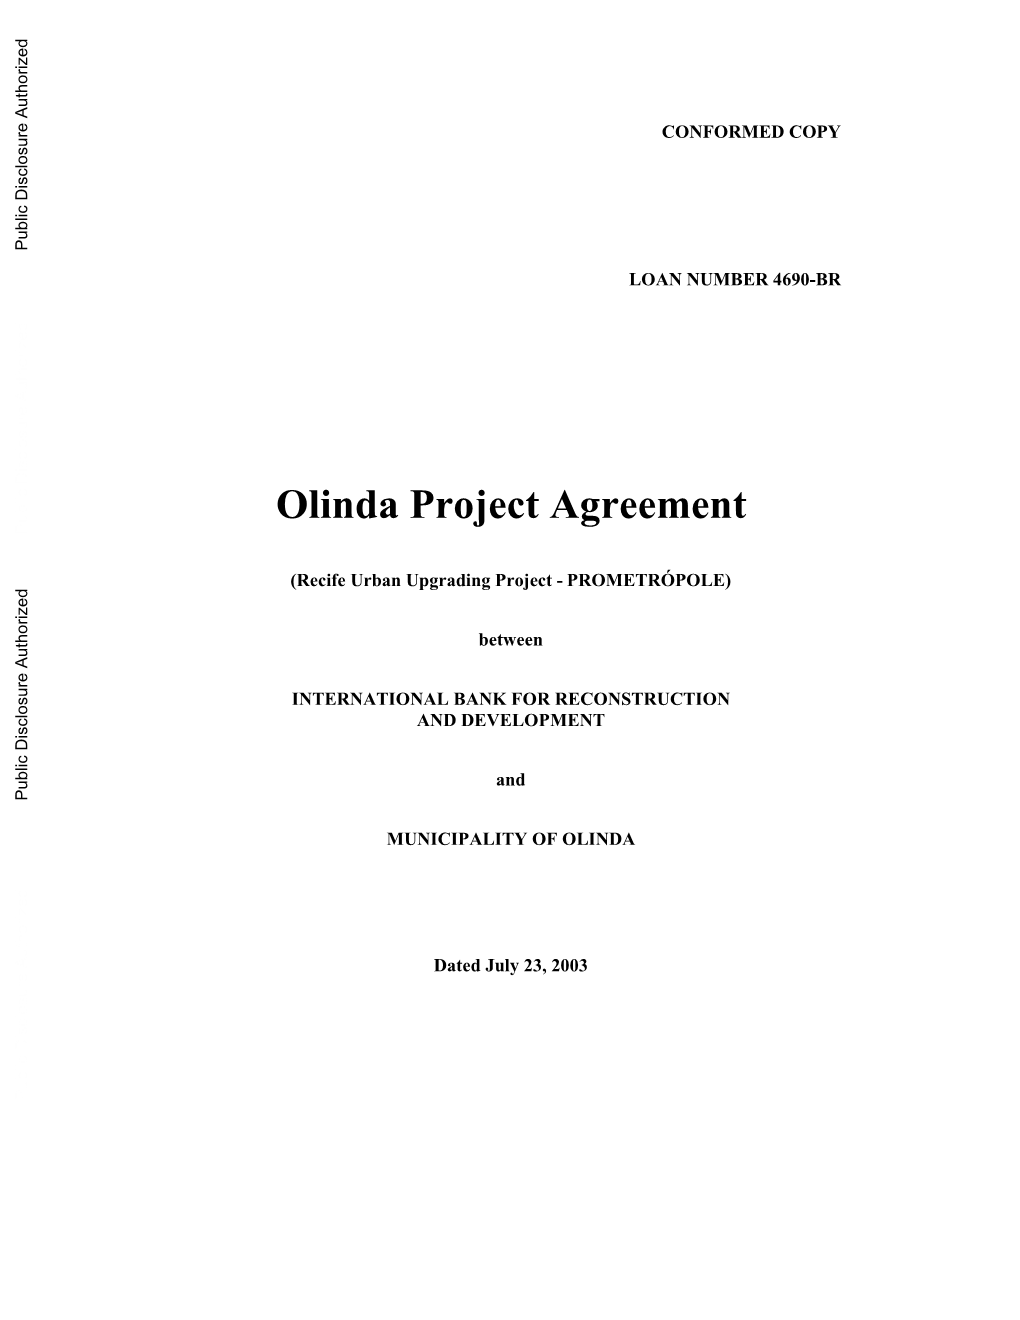 Olinda Project Agreement Public Disclosure Authorized